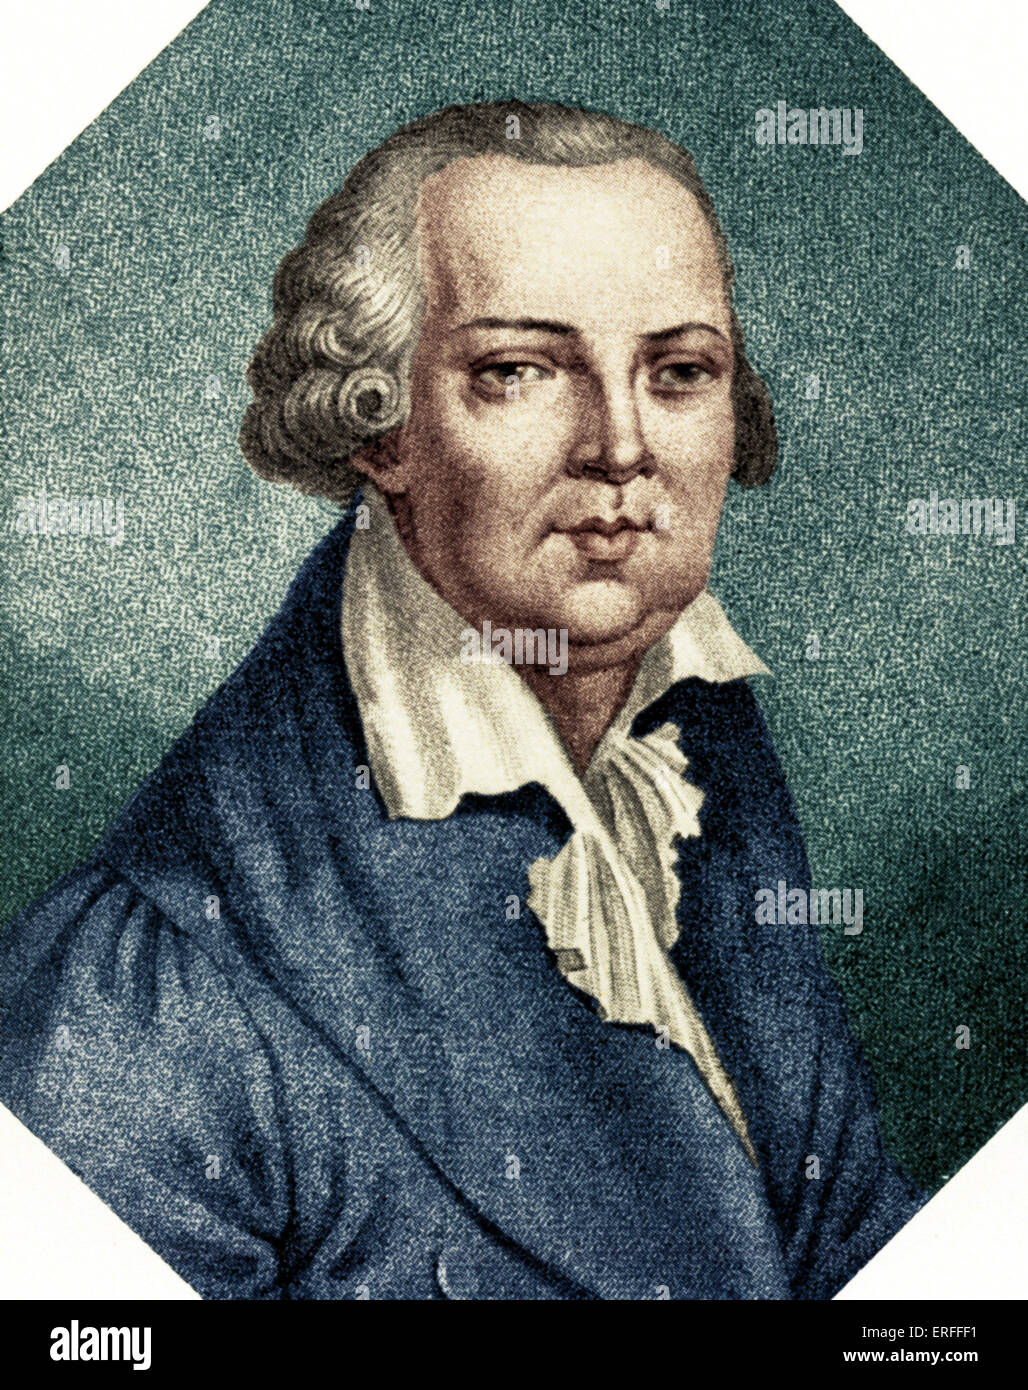 Domenico Cimarosa, - retrato. Compositor italiano el 17 de diciembre de 1749- 11 de enero de 1801. Foto de stock